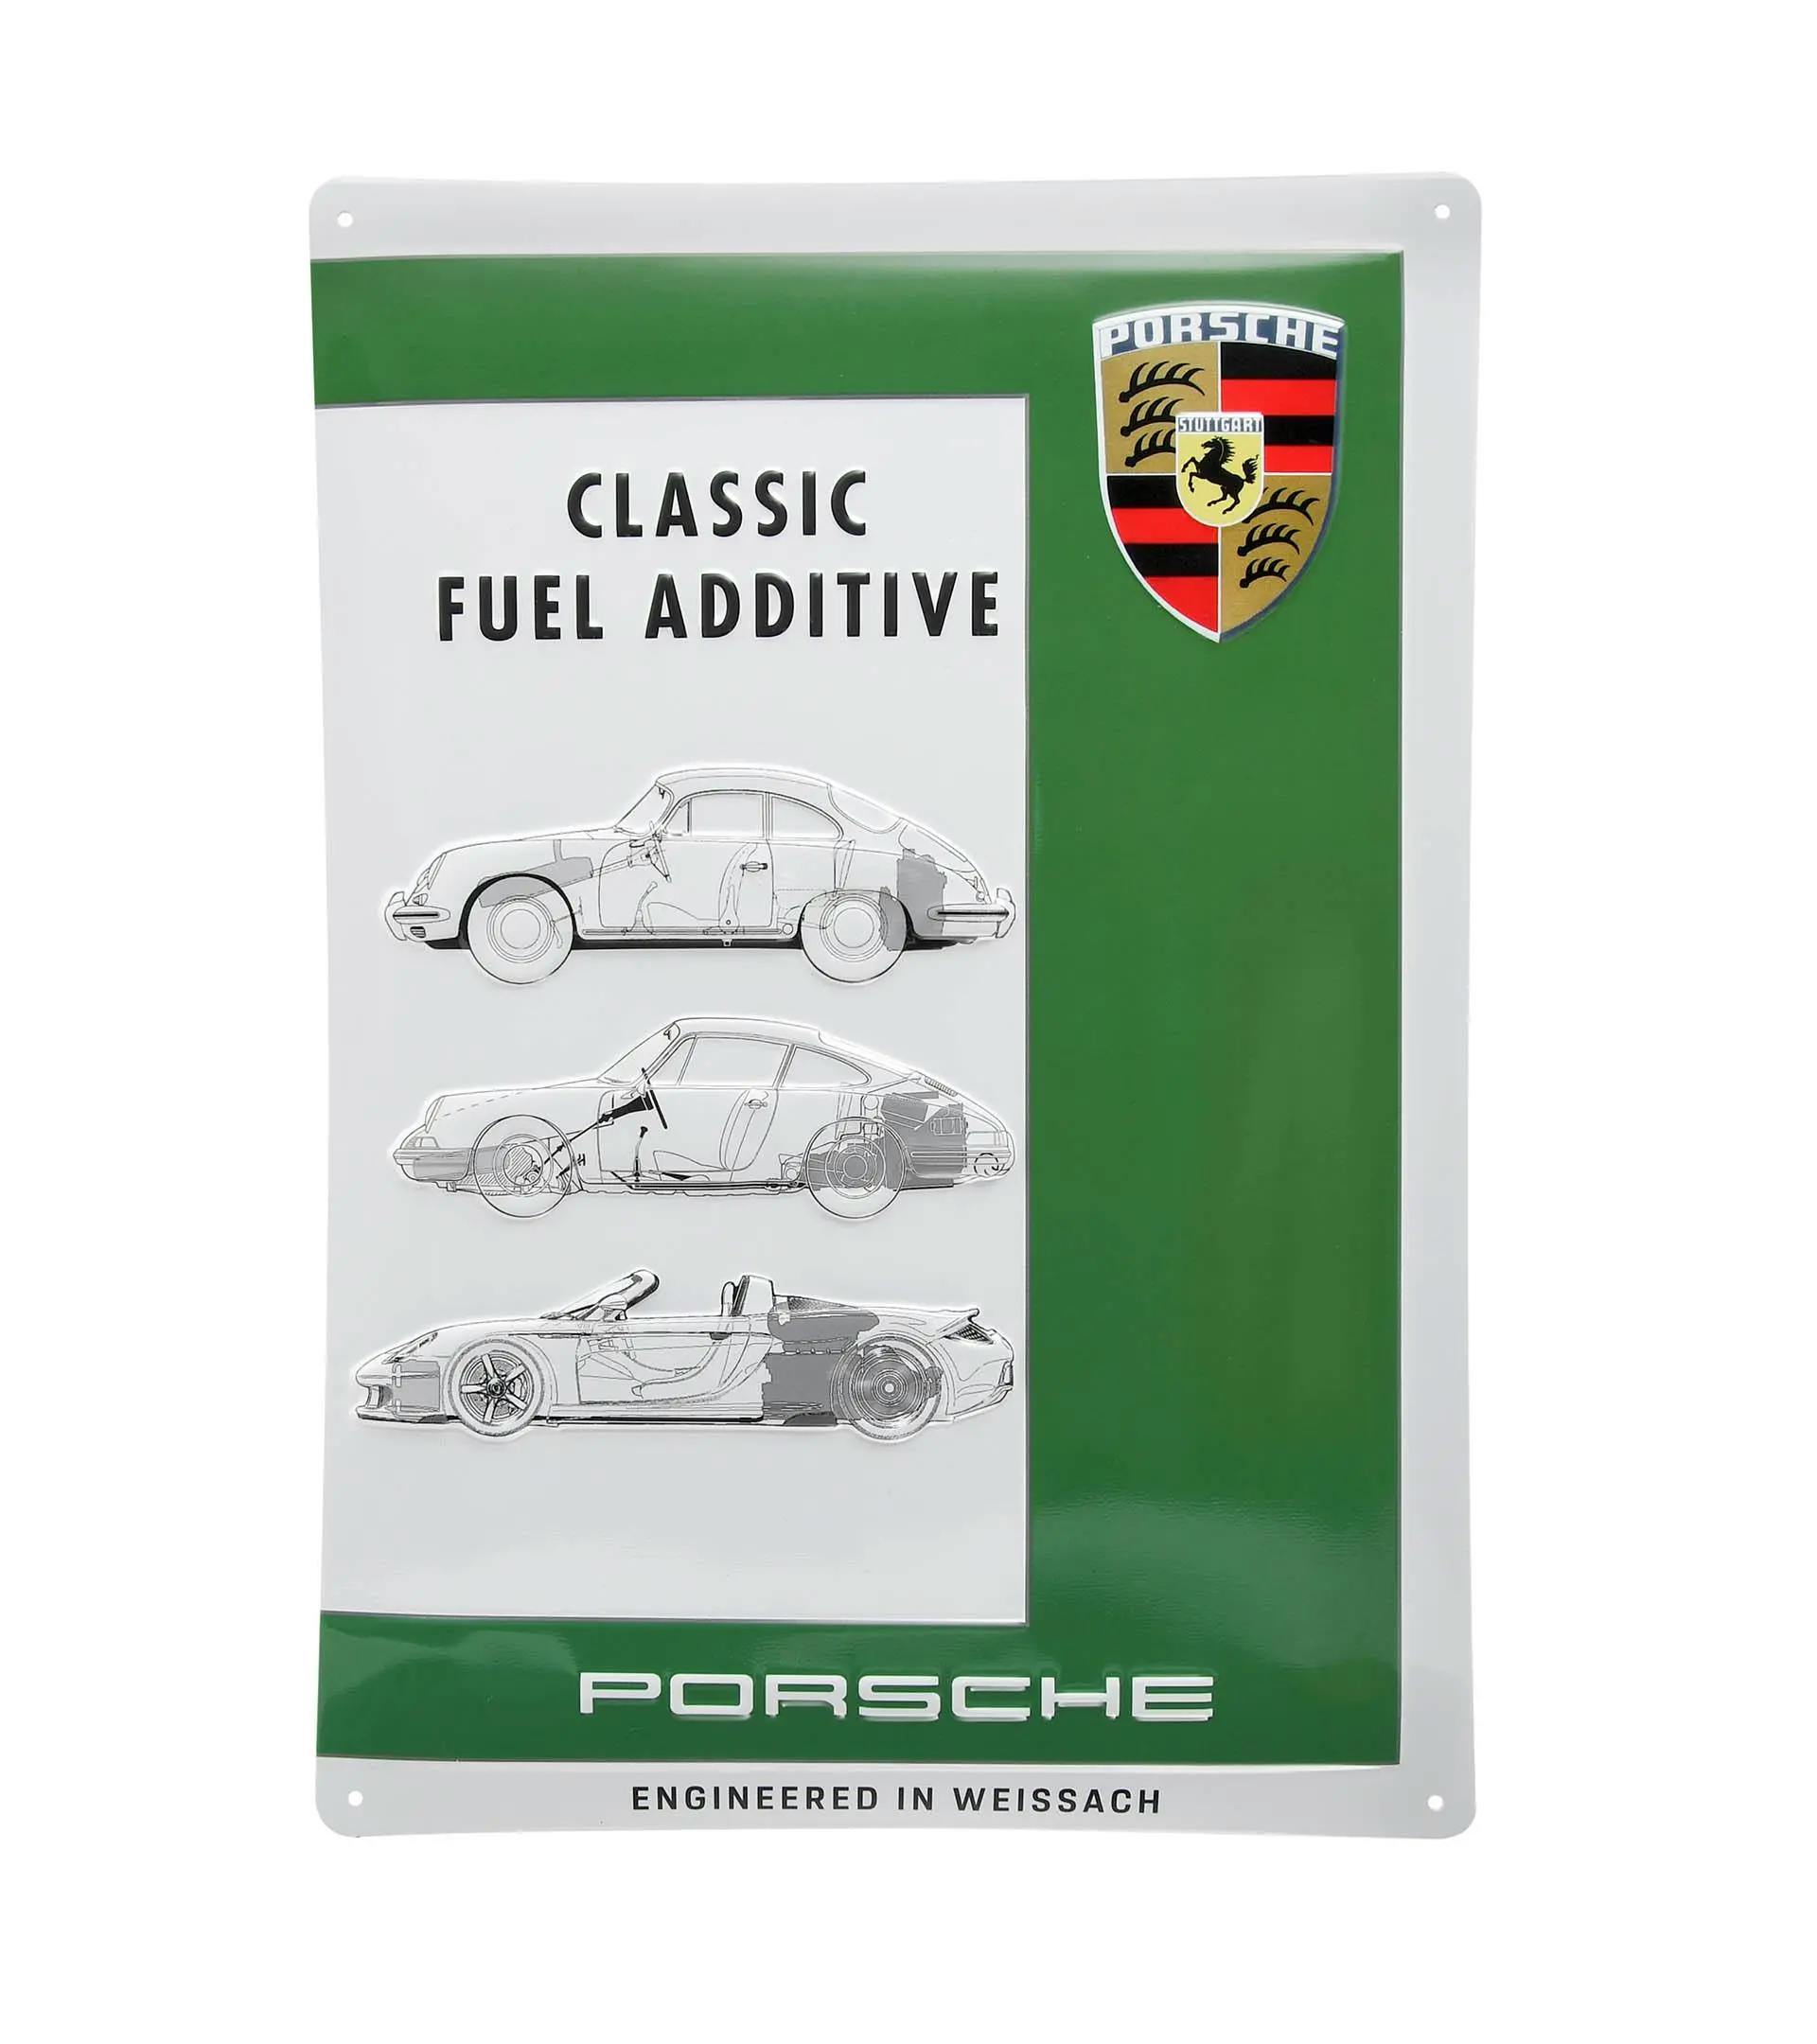 Targa in metallo additivo per carburante Porsche Classic 1